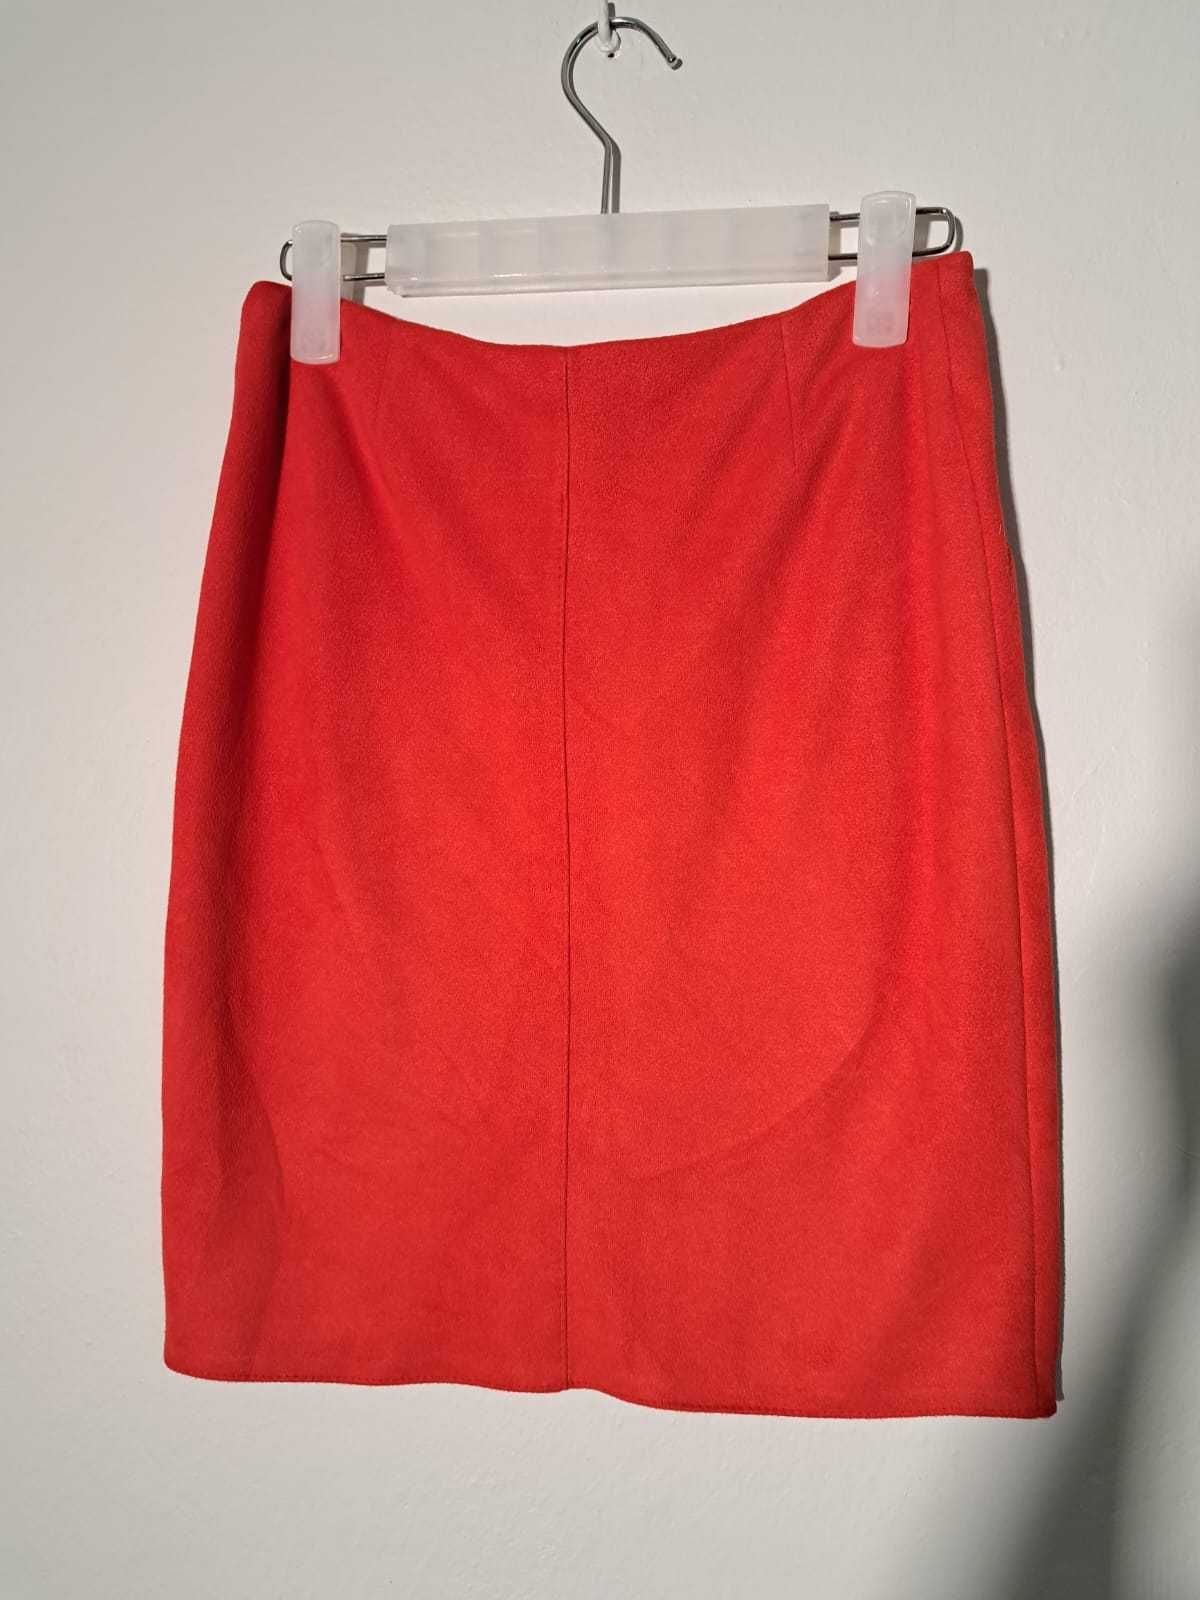 welurowa spódnica czerwona, krótka spódnica, spódnica ołówkowa,S/M